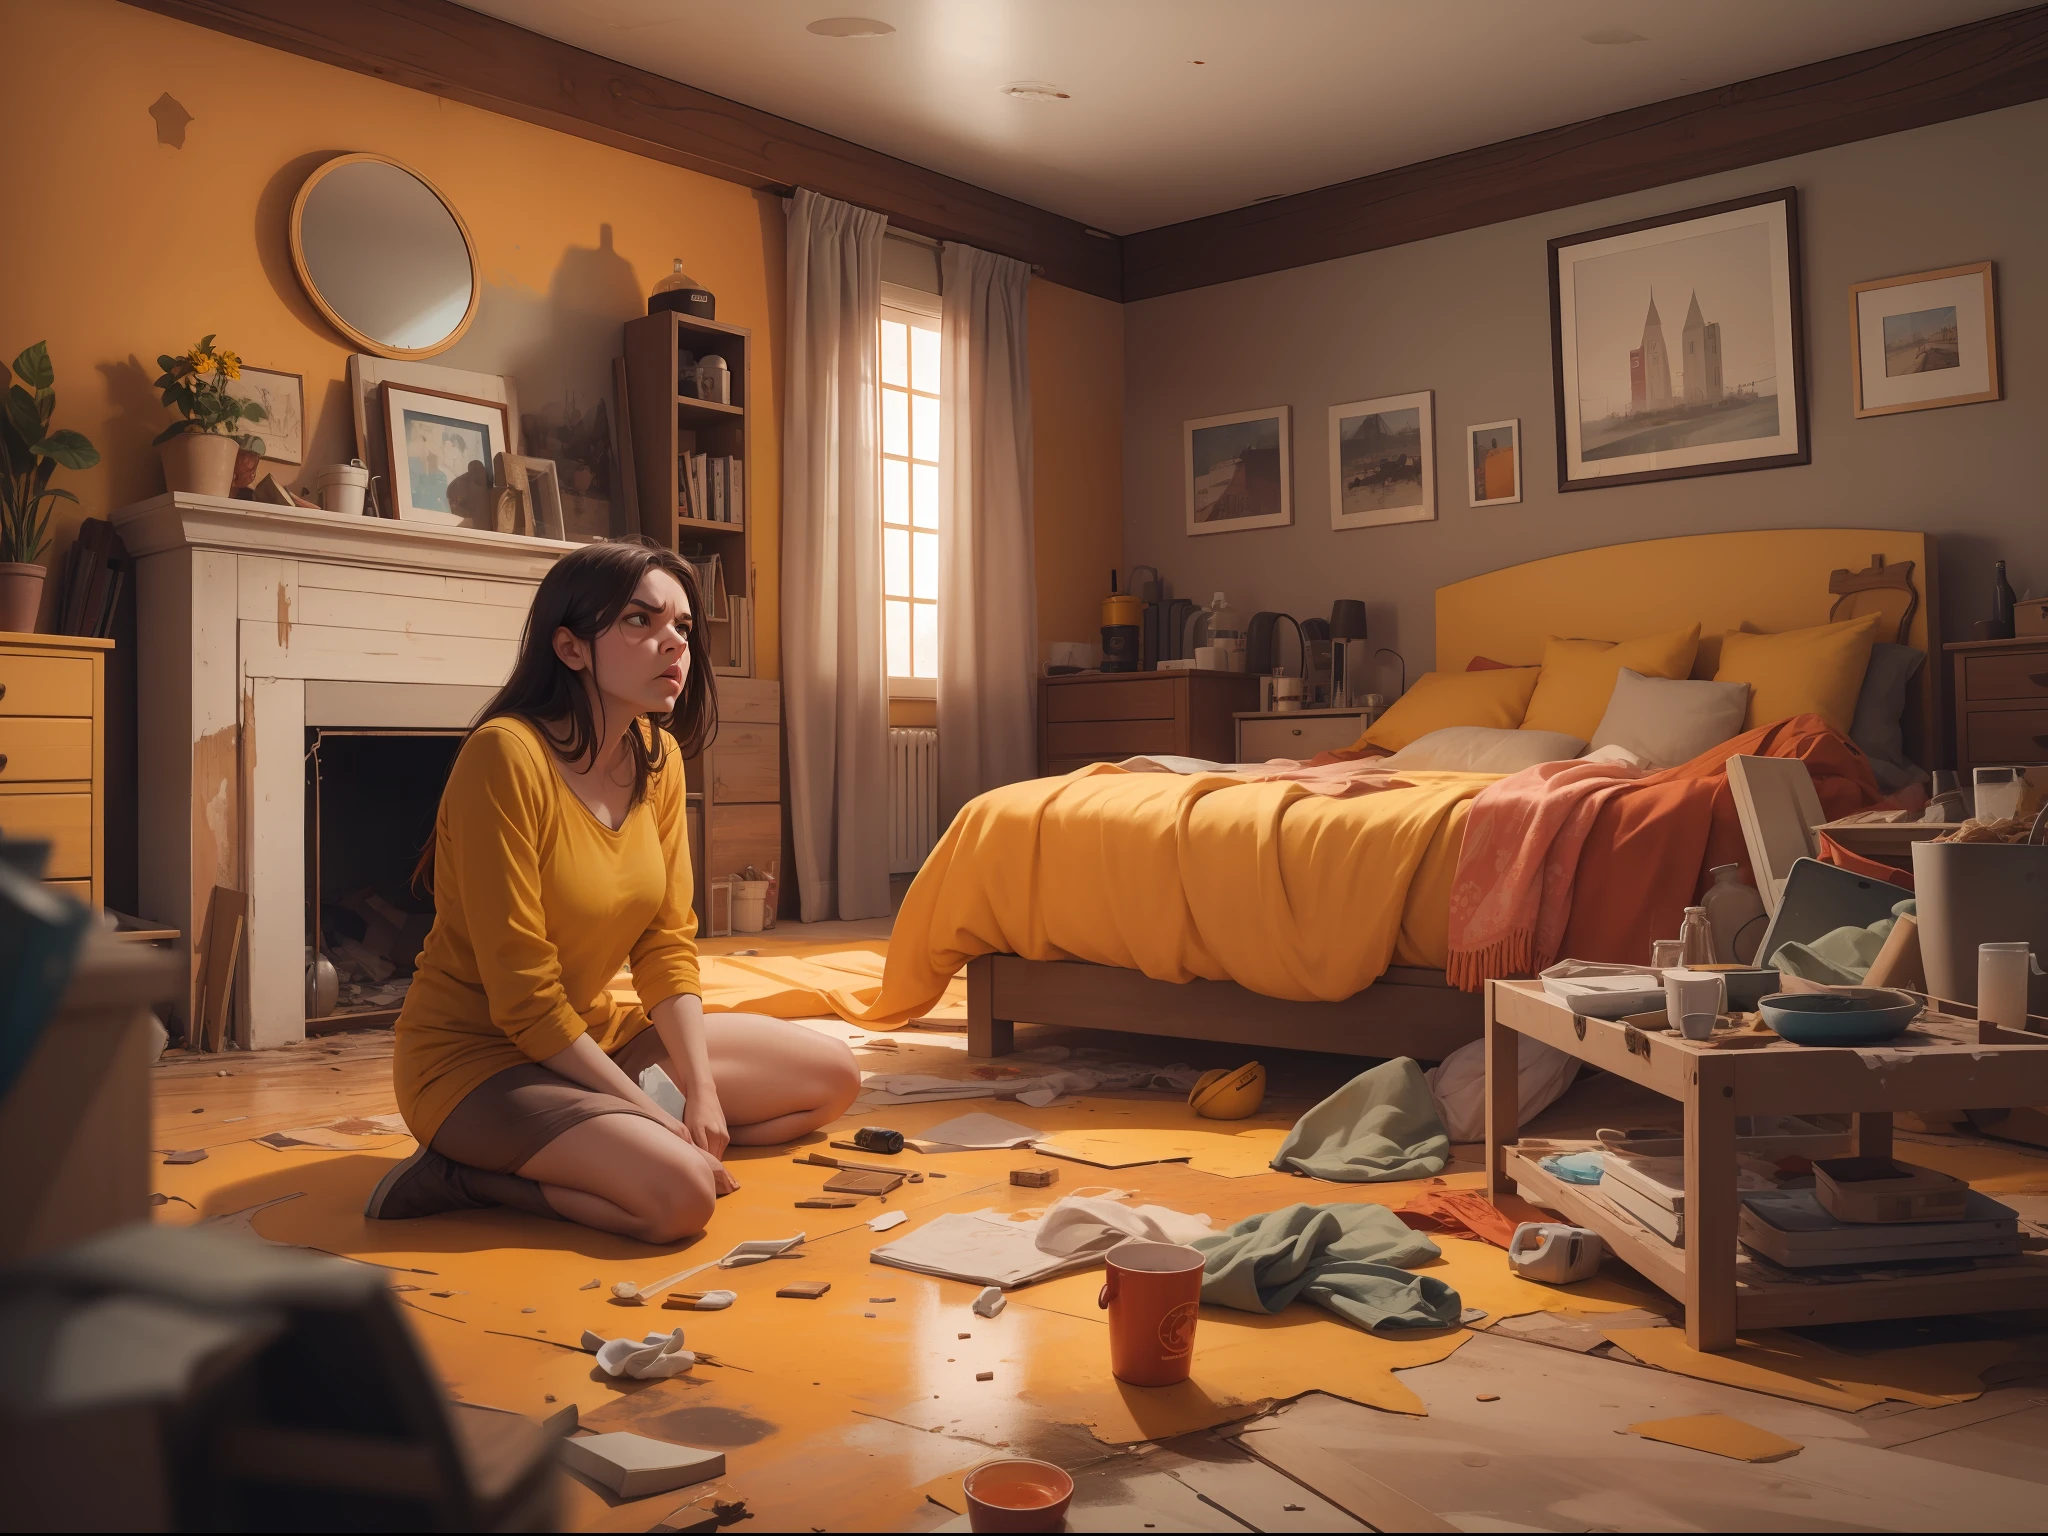 امرأة تبدو غاضبة وتنظر إلى المنزل الفوضوي, باستخدام قفاز مطاطي أصفر للتنظيف, حقيقي, 8 كيلو, العمل الخام